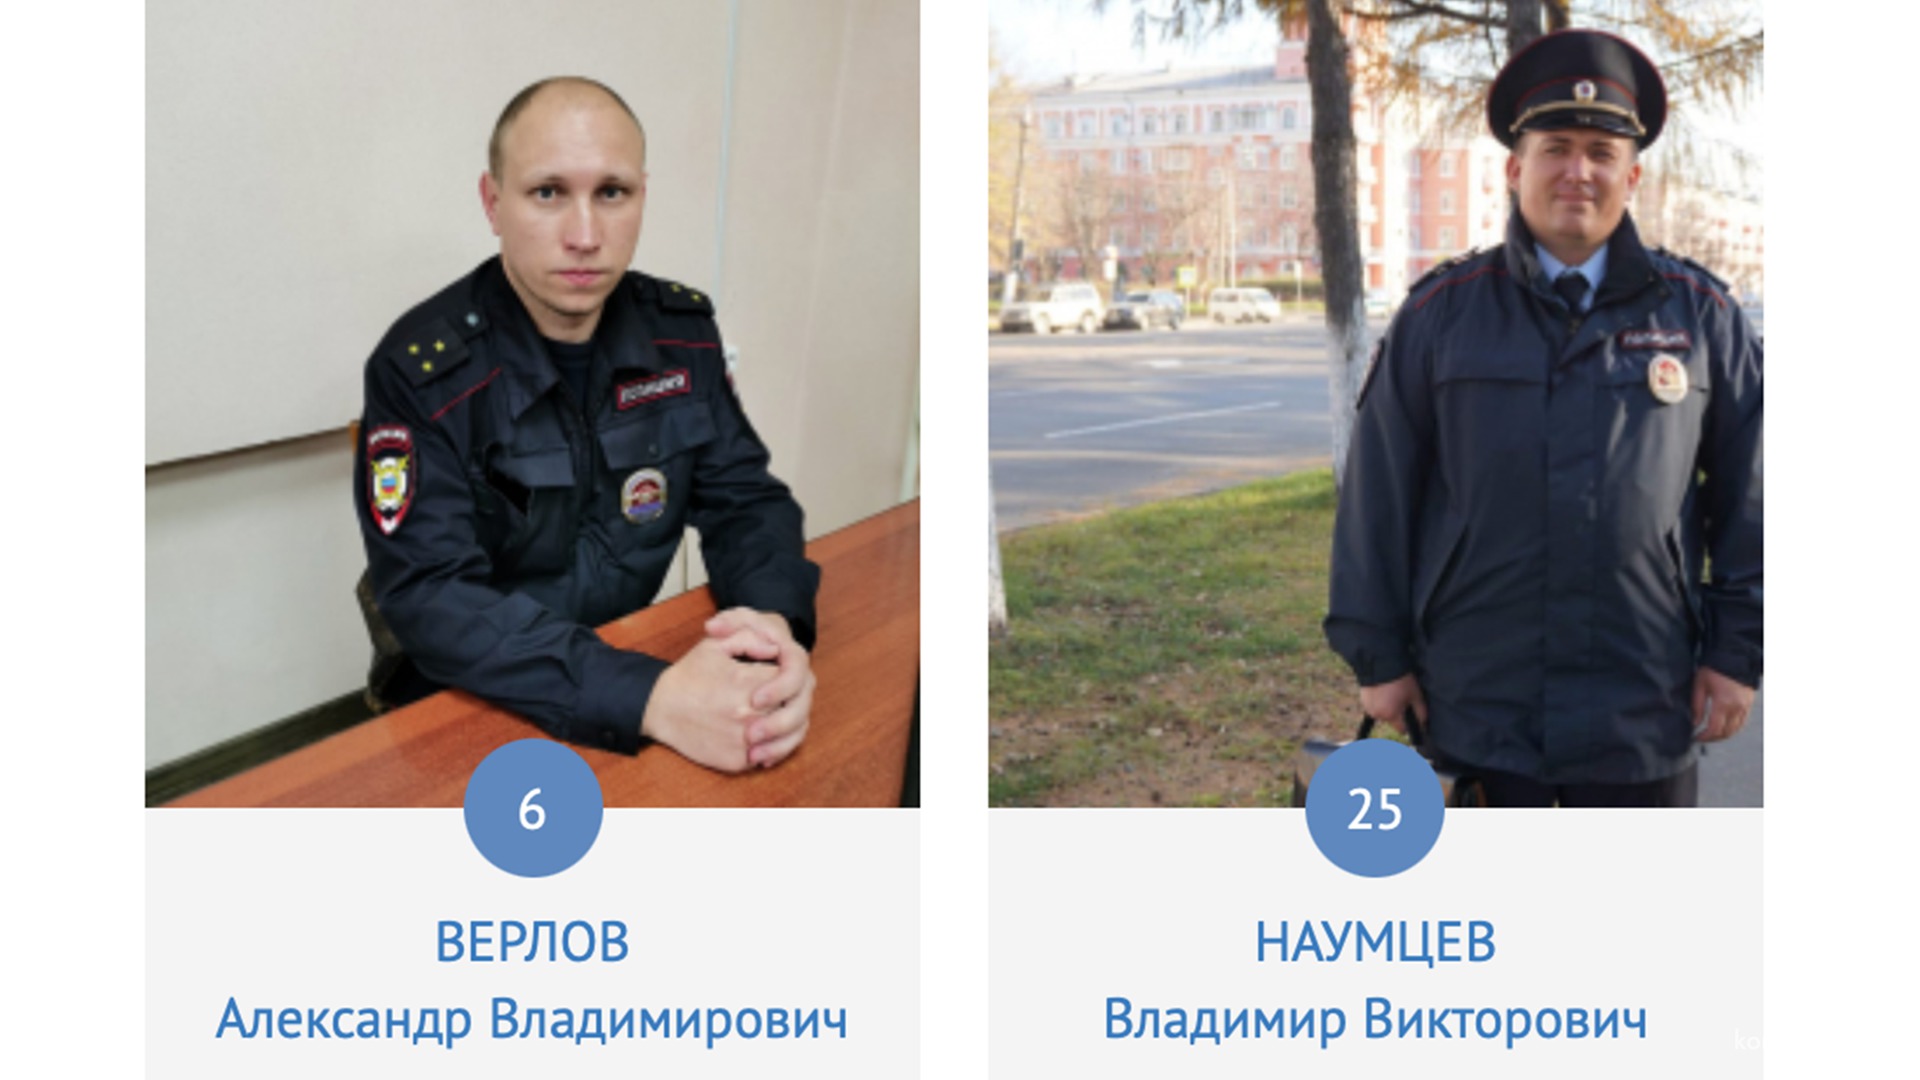 В Хабаровском крае стартовал конкурс «Народный участковый», от Комсомольска-на-Амуре участвуют два полицейских